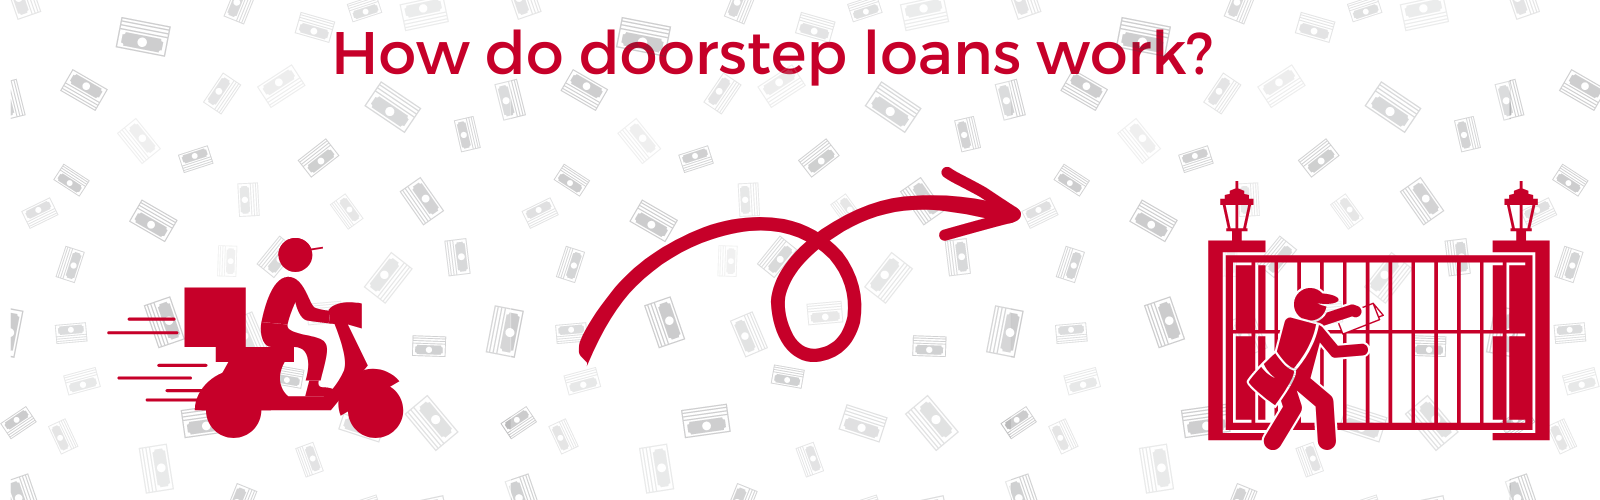 How doorstep loans work